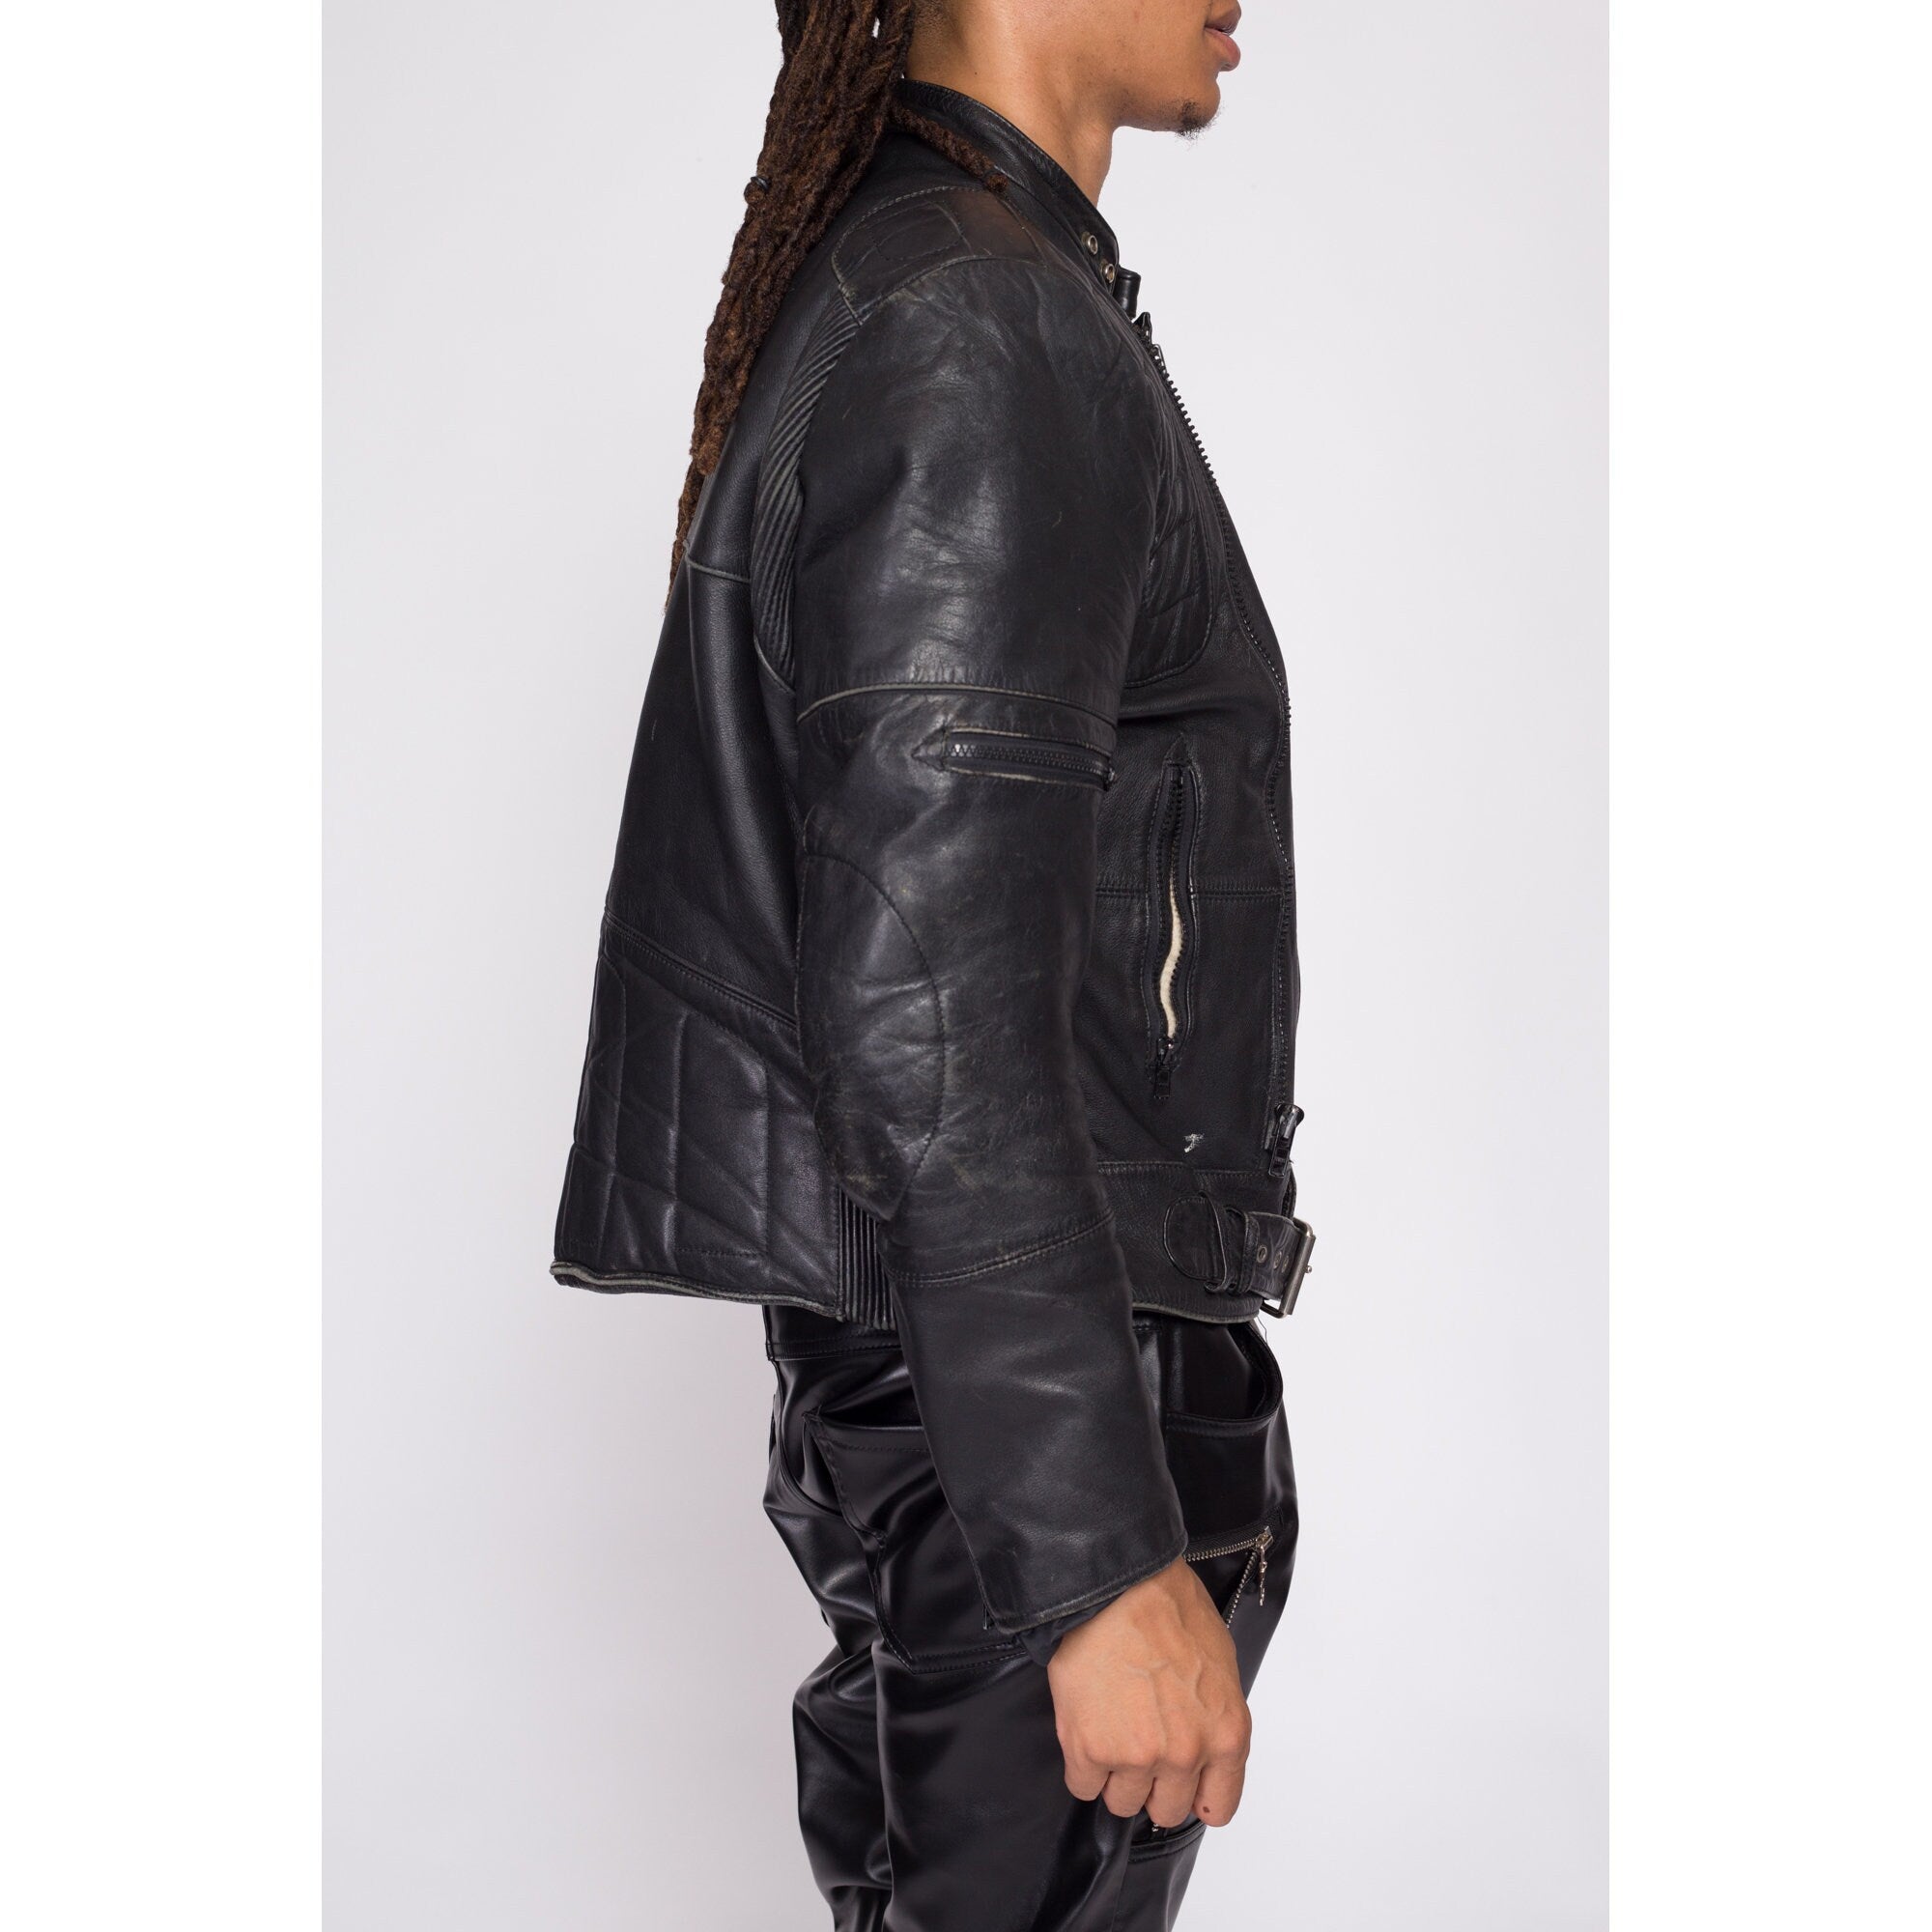 90s Wilsons Black Leather Padded Moto Jacket - Men's Large, Size